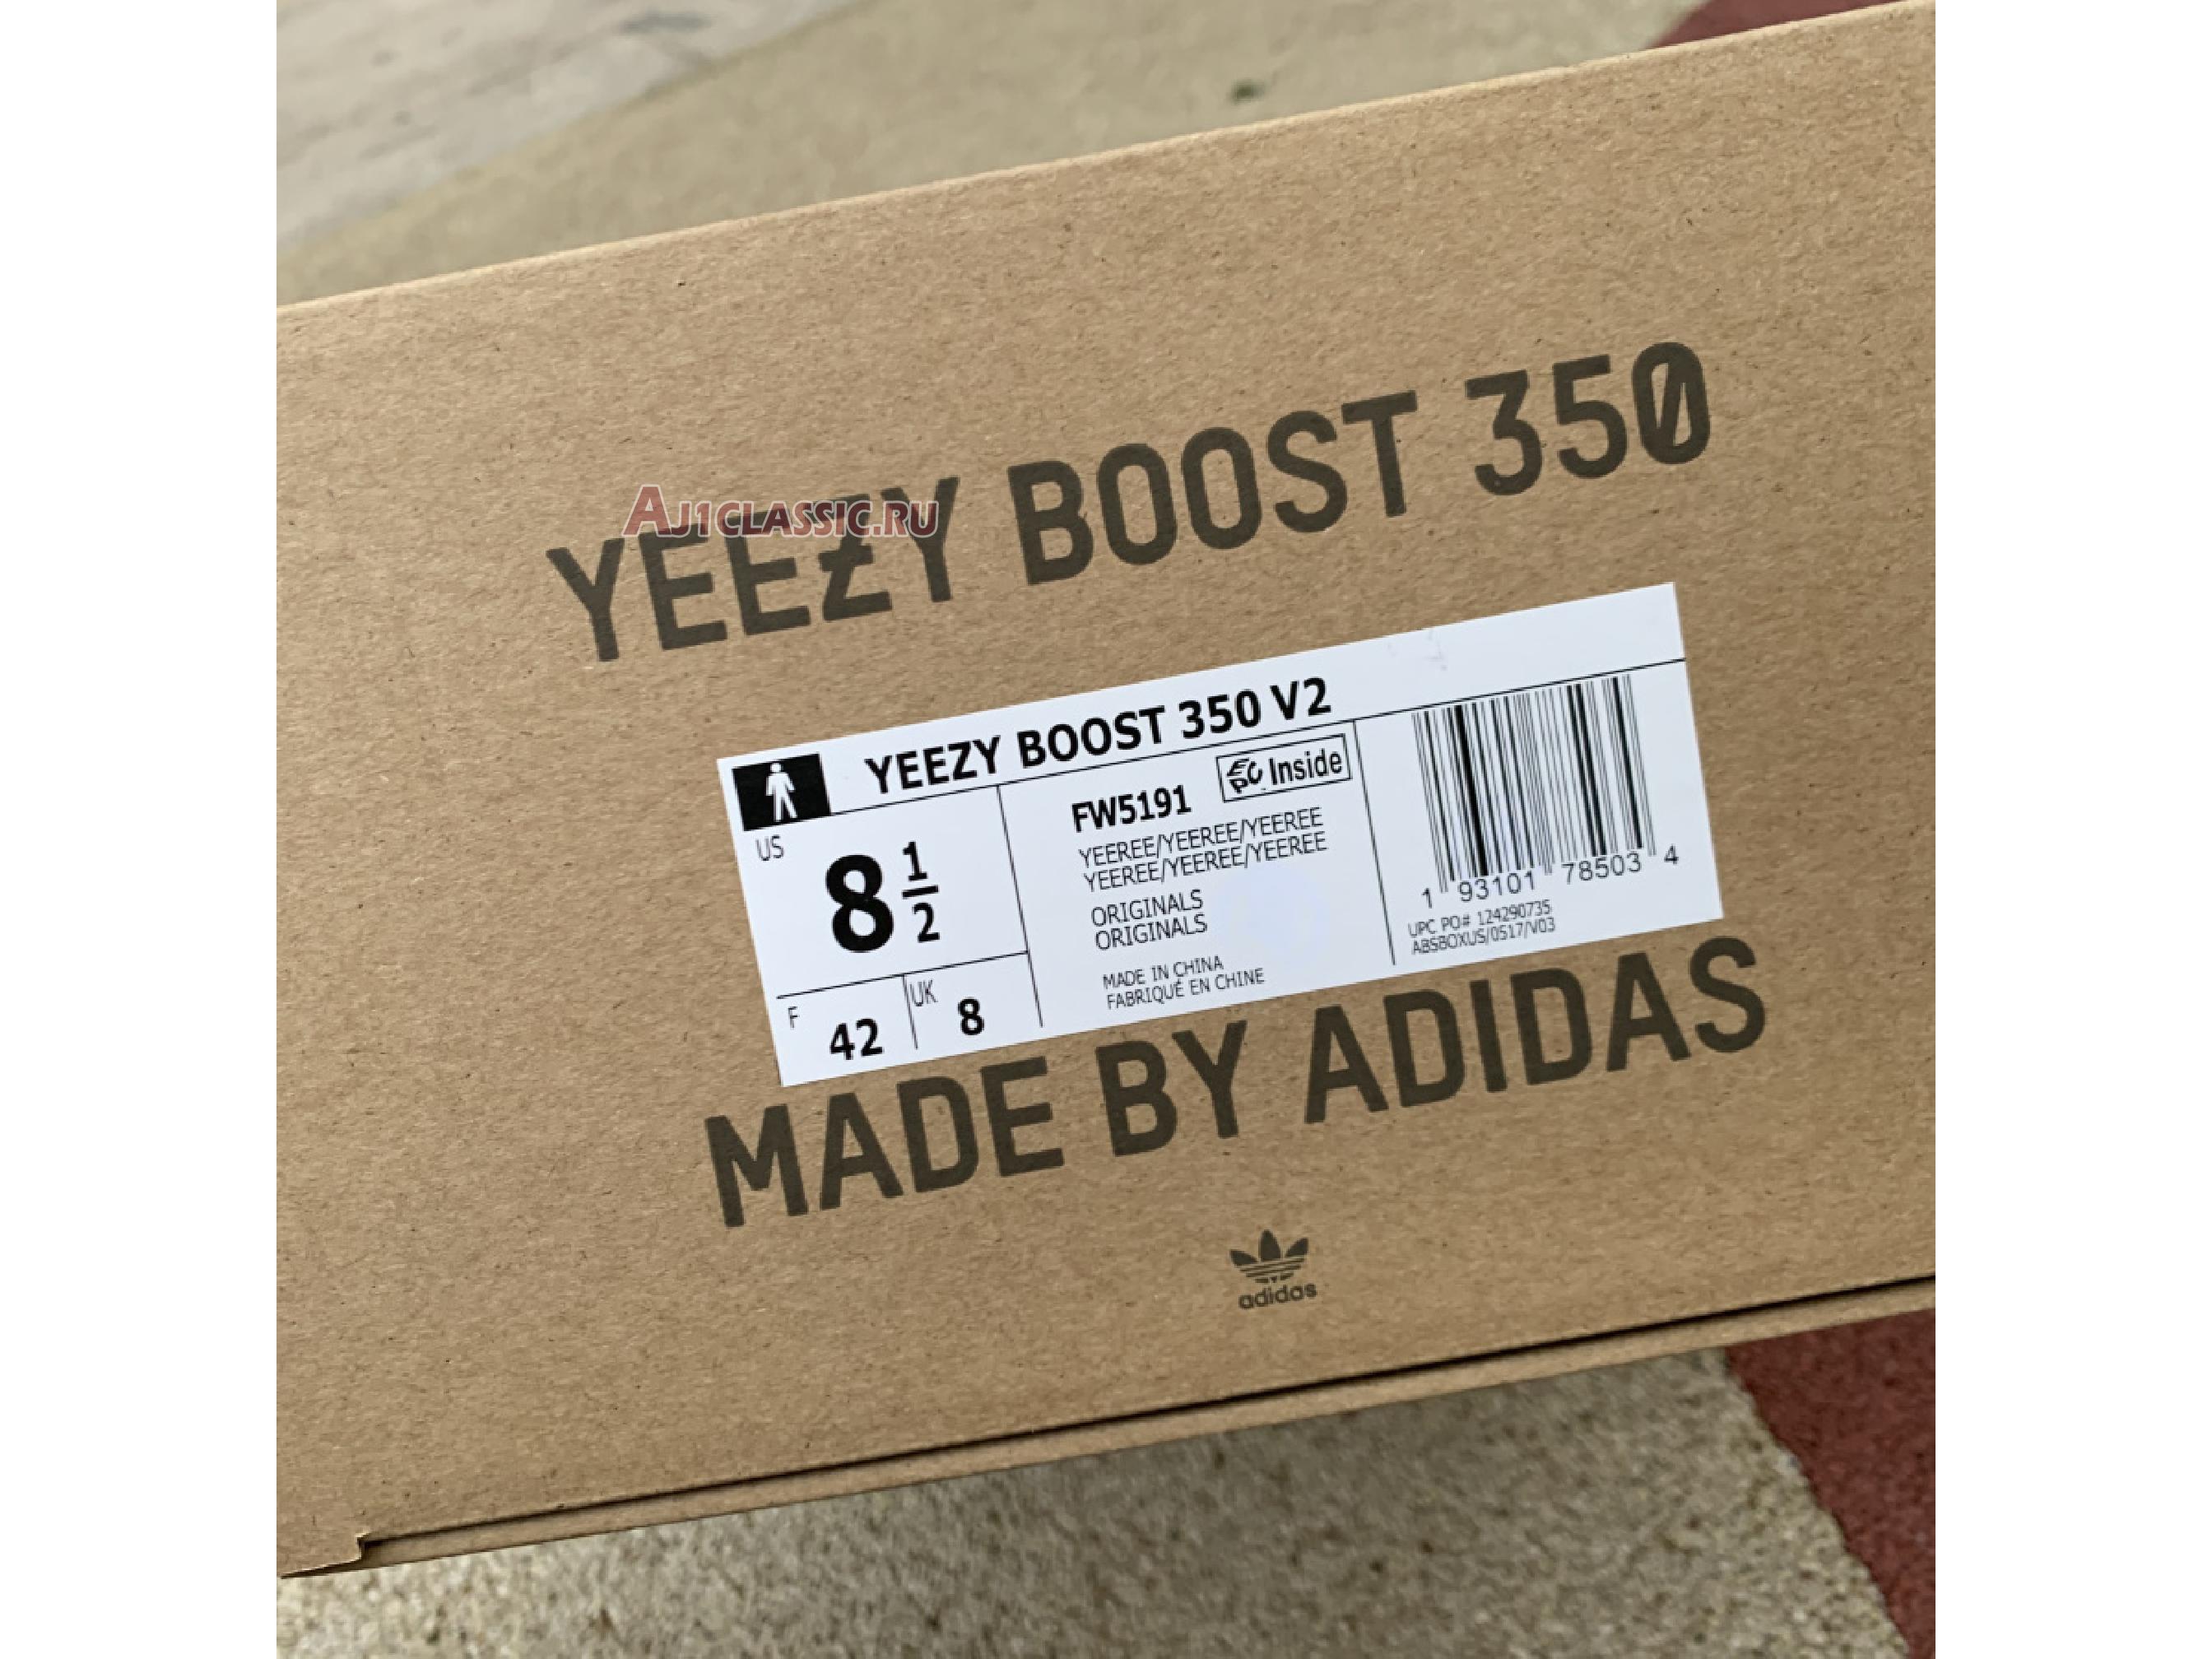 Adidas Yeezy Boost 350 V2 "Yeezreel Non-Reflective" FW5191